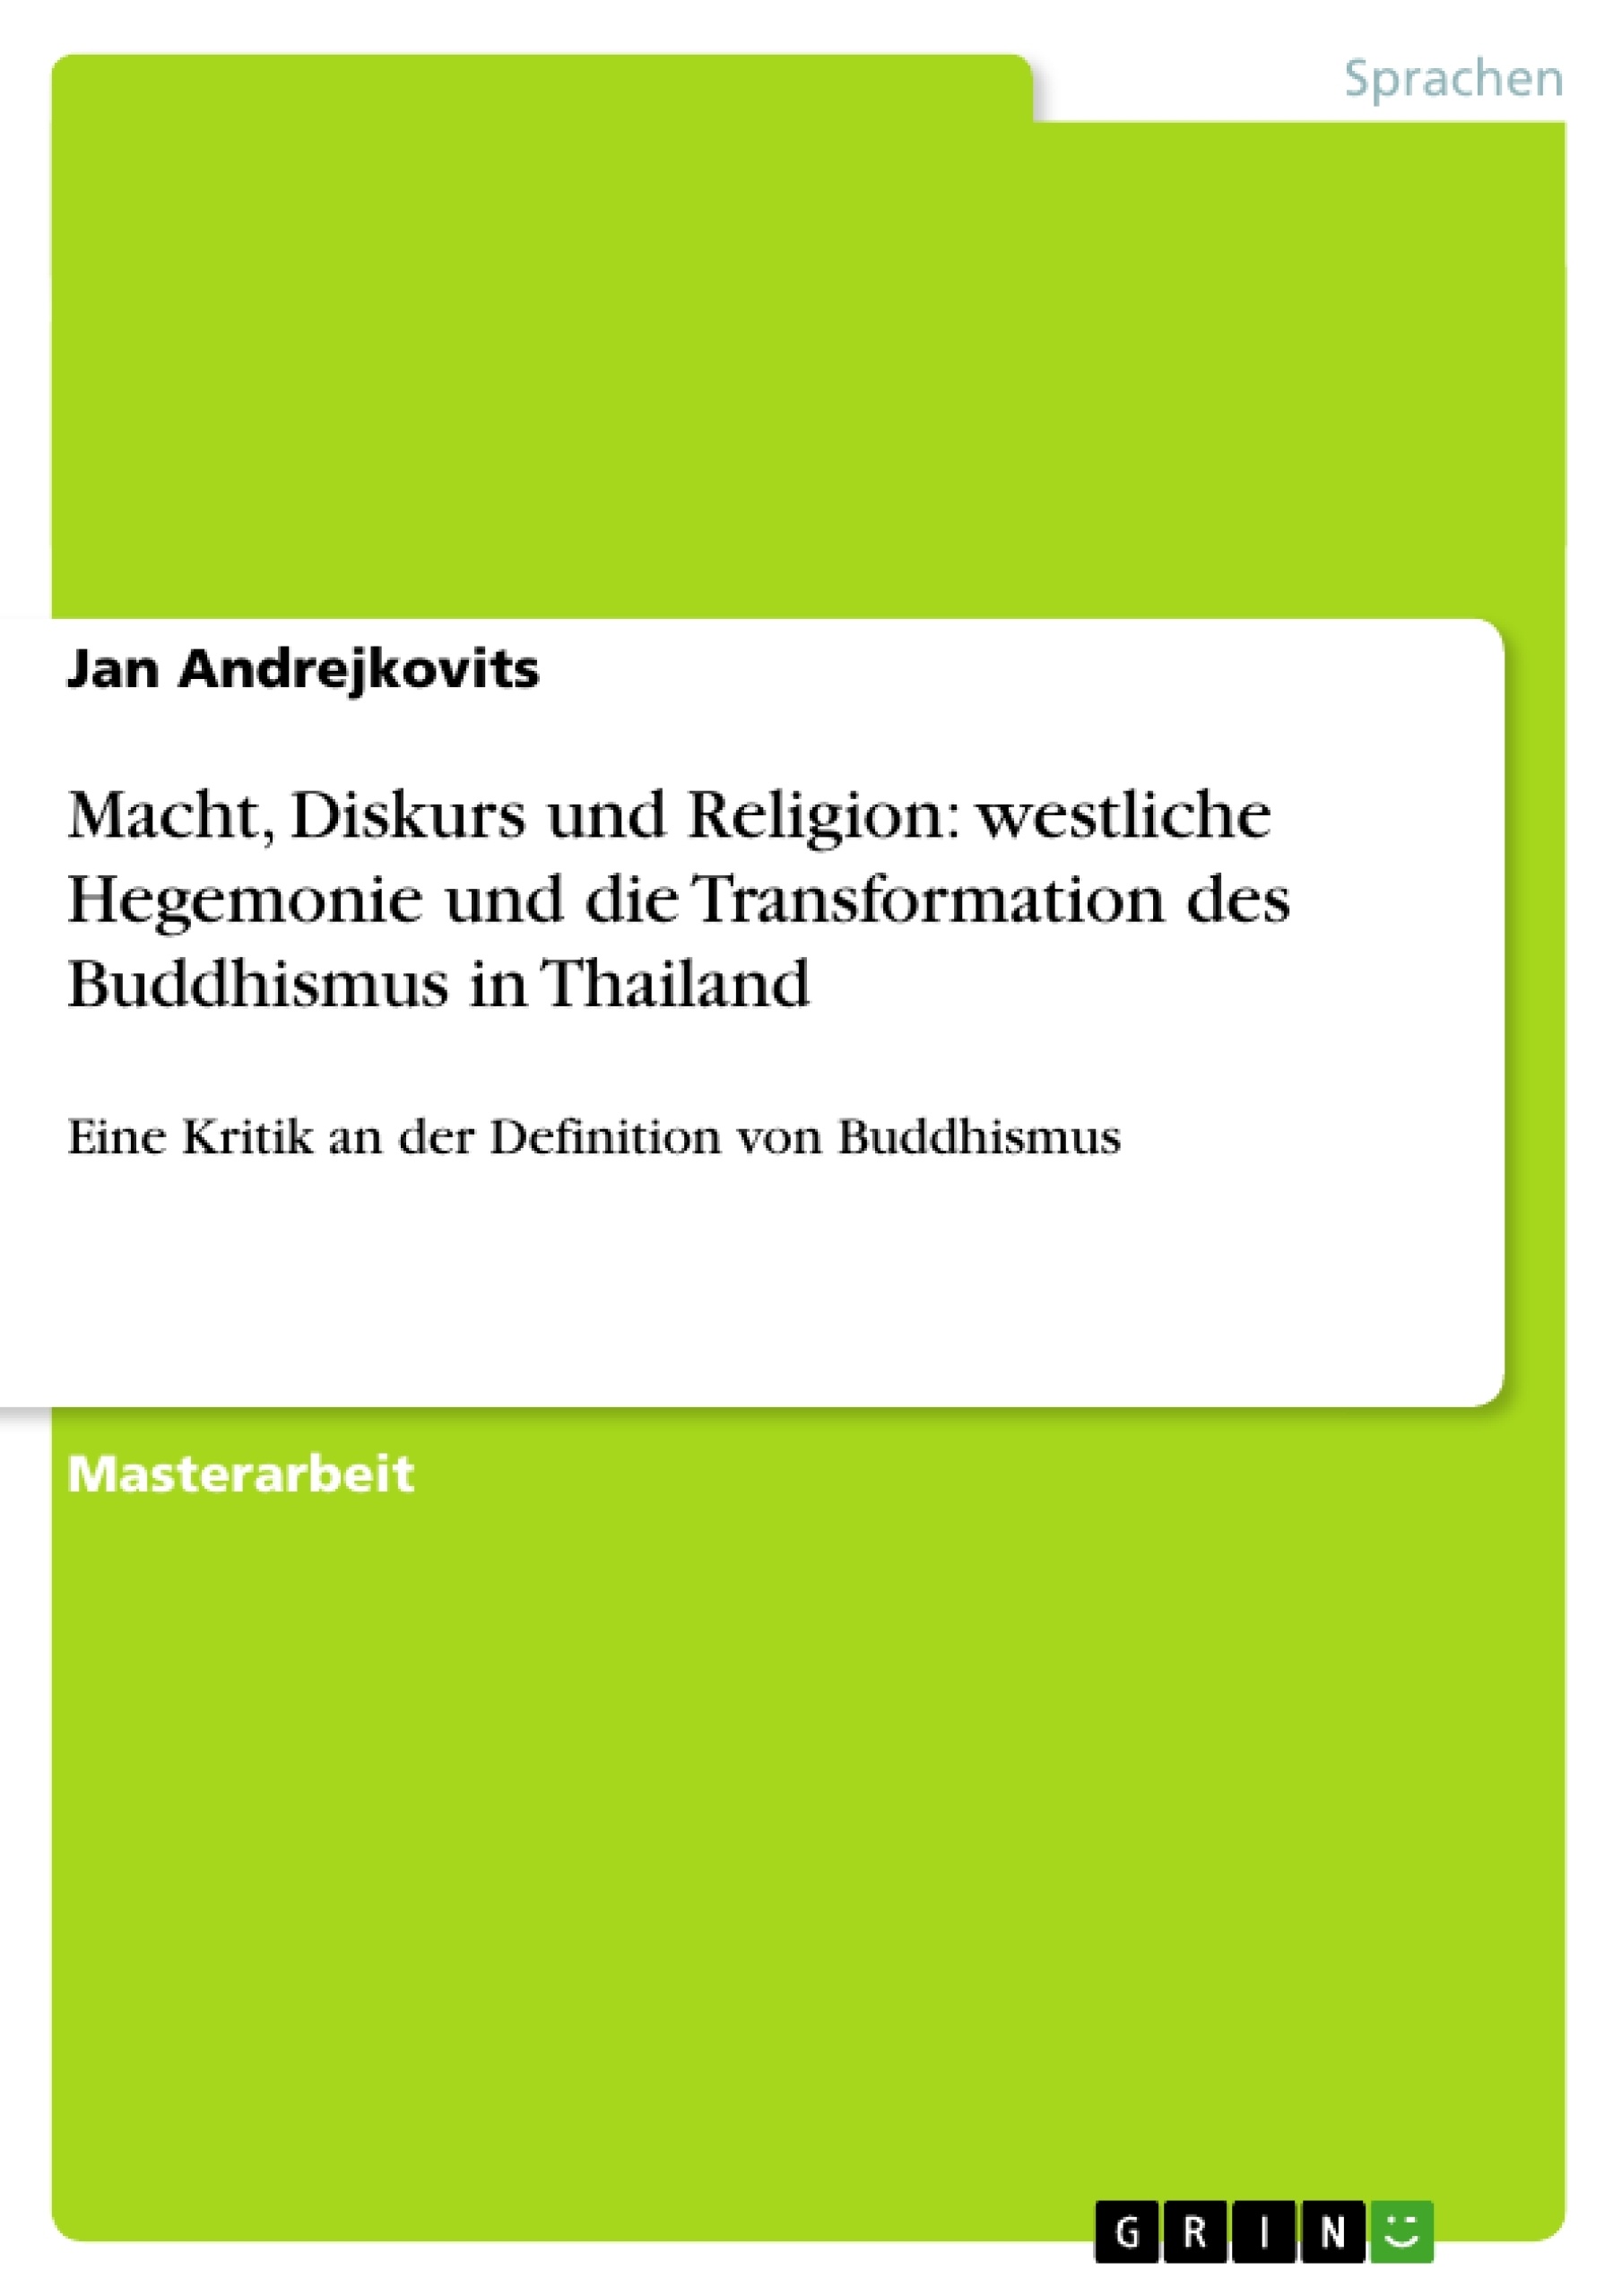 Título: Macht, Diskurs und Religion: westliche Hegemonie und die Transformation des Buddhismus in Thailand